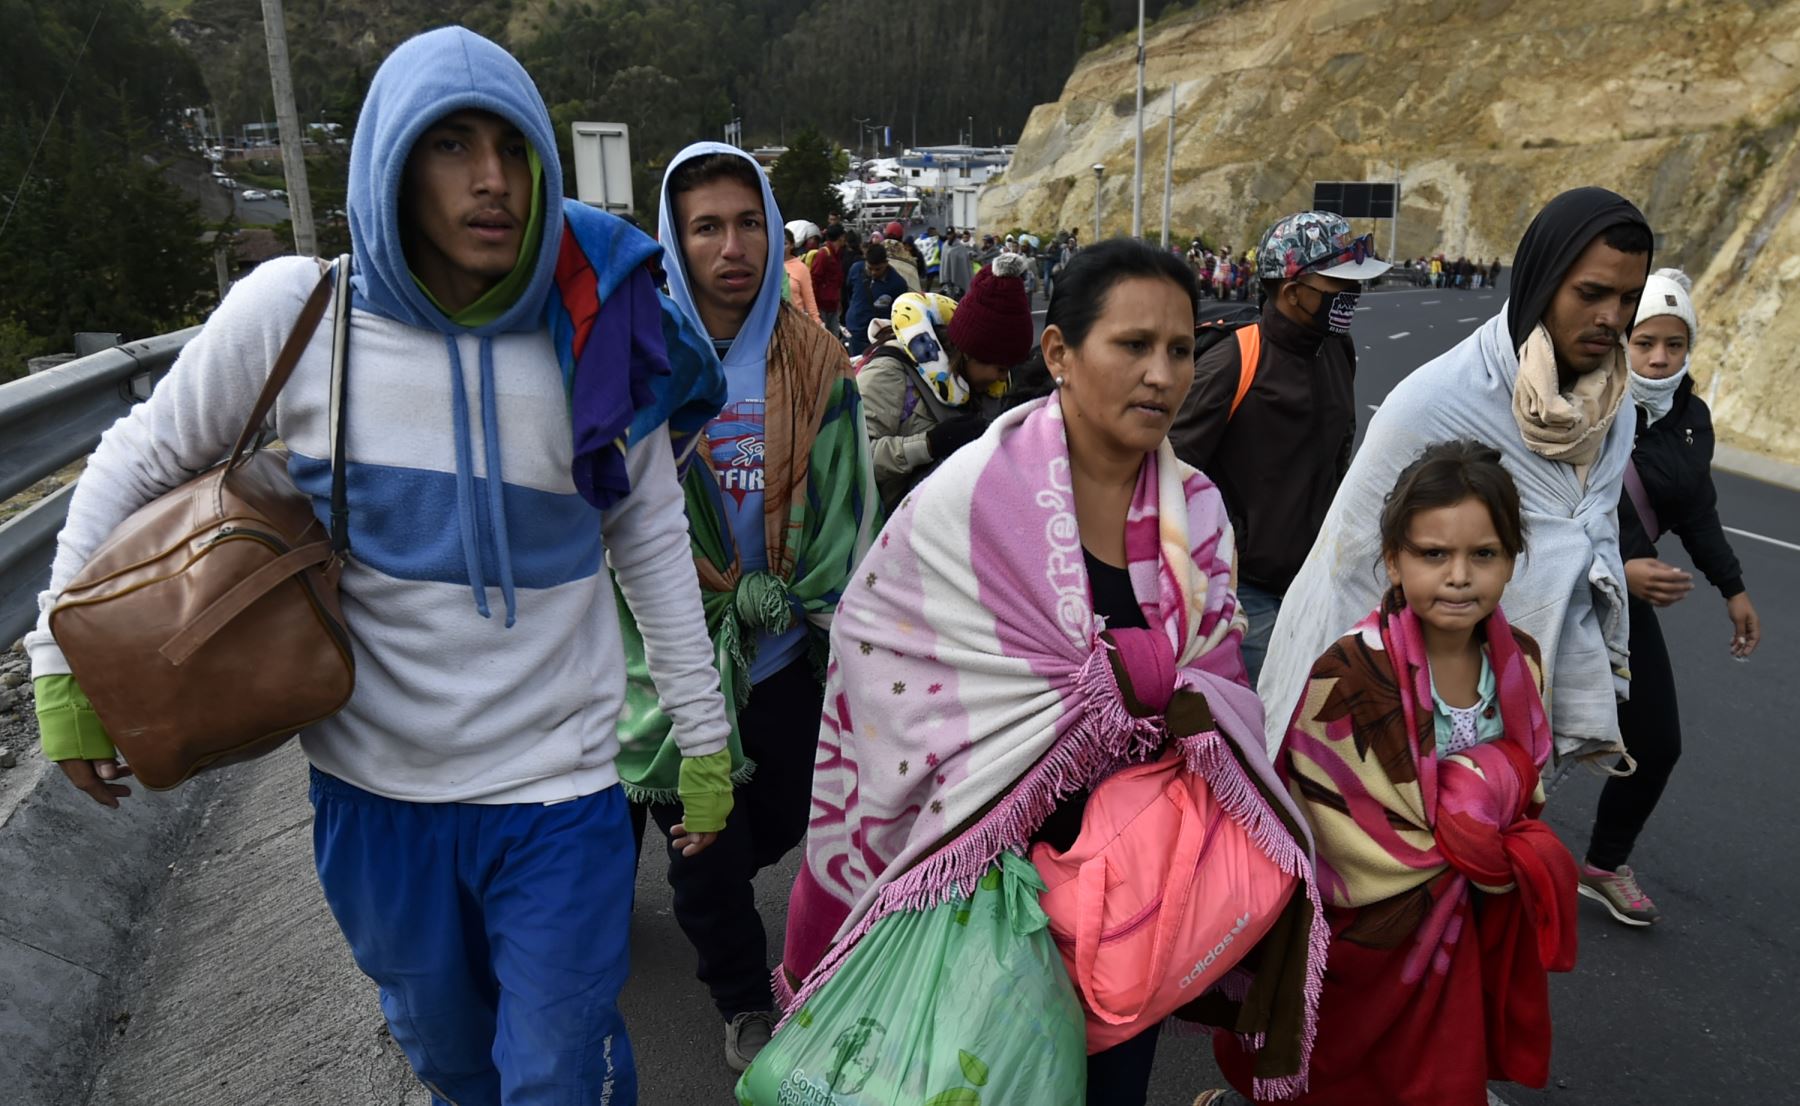 Los venezolanos que se dirigen a Perú caminan a lo largo de la carretera Panamericana en Tulcán, Ecuador, después de cruzar desde Colombia, el 21 de agosto de 2018.AFP